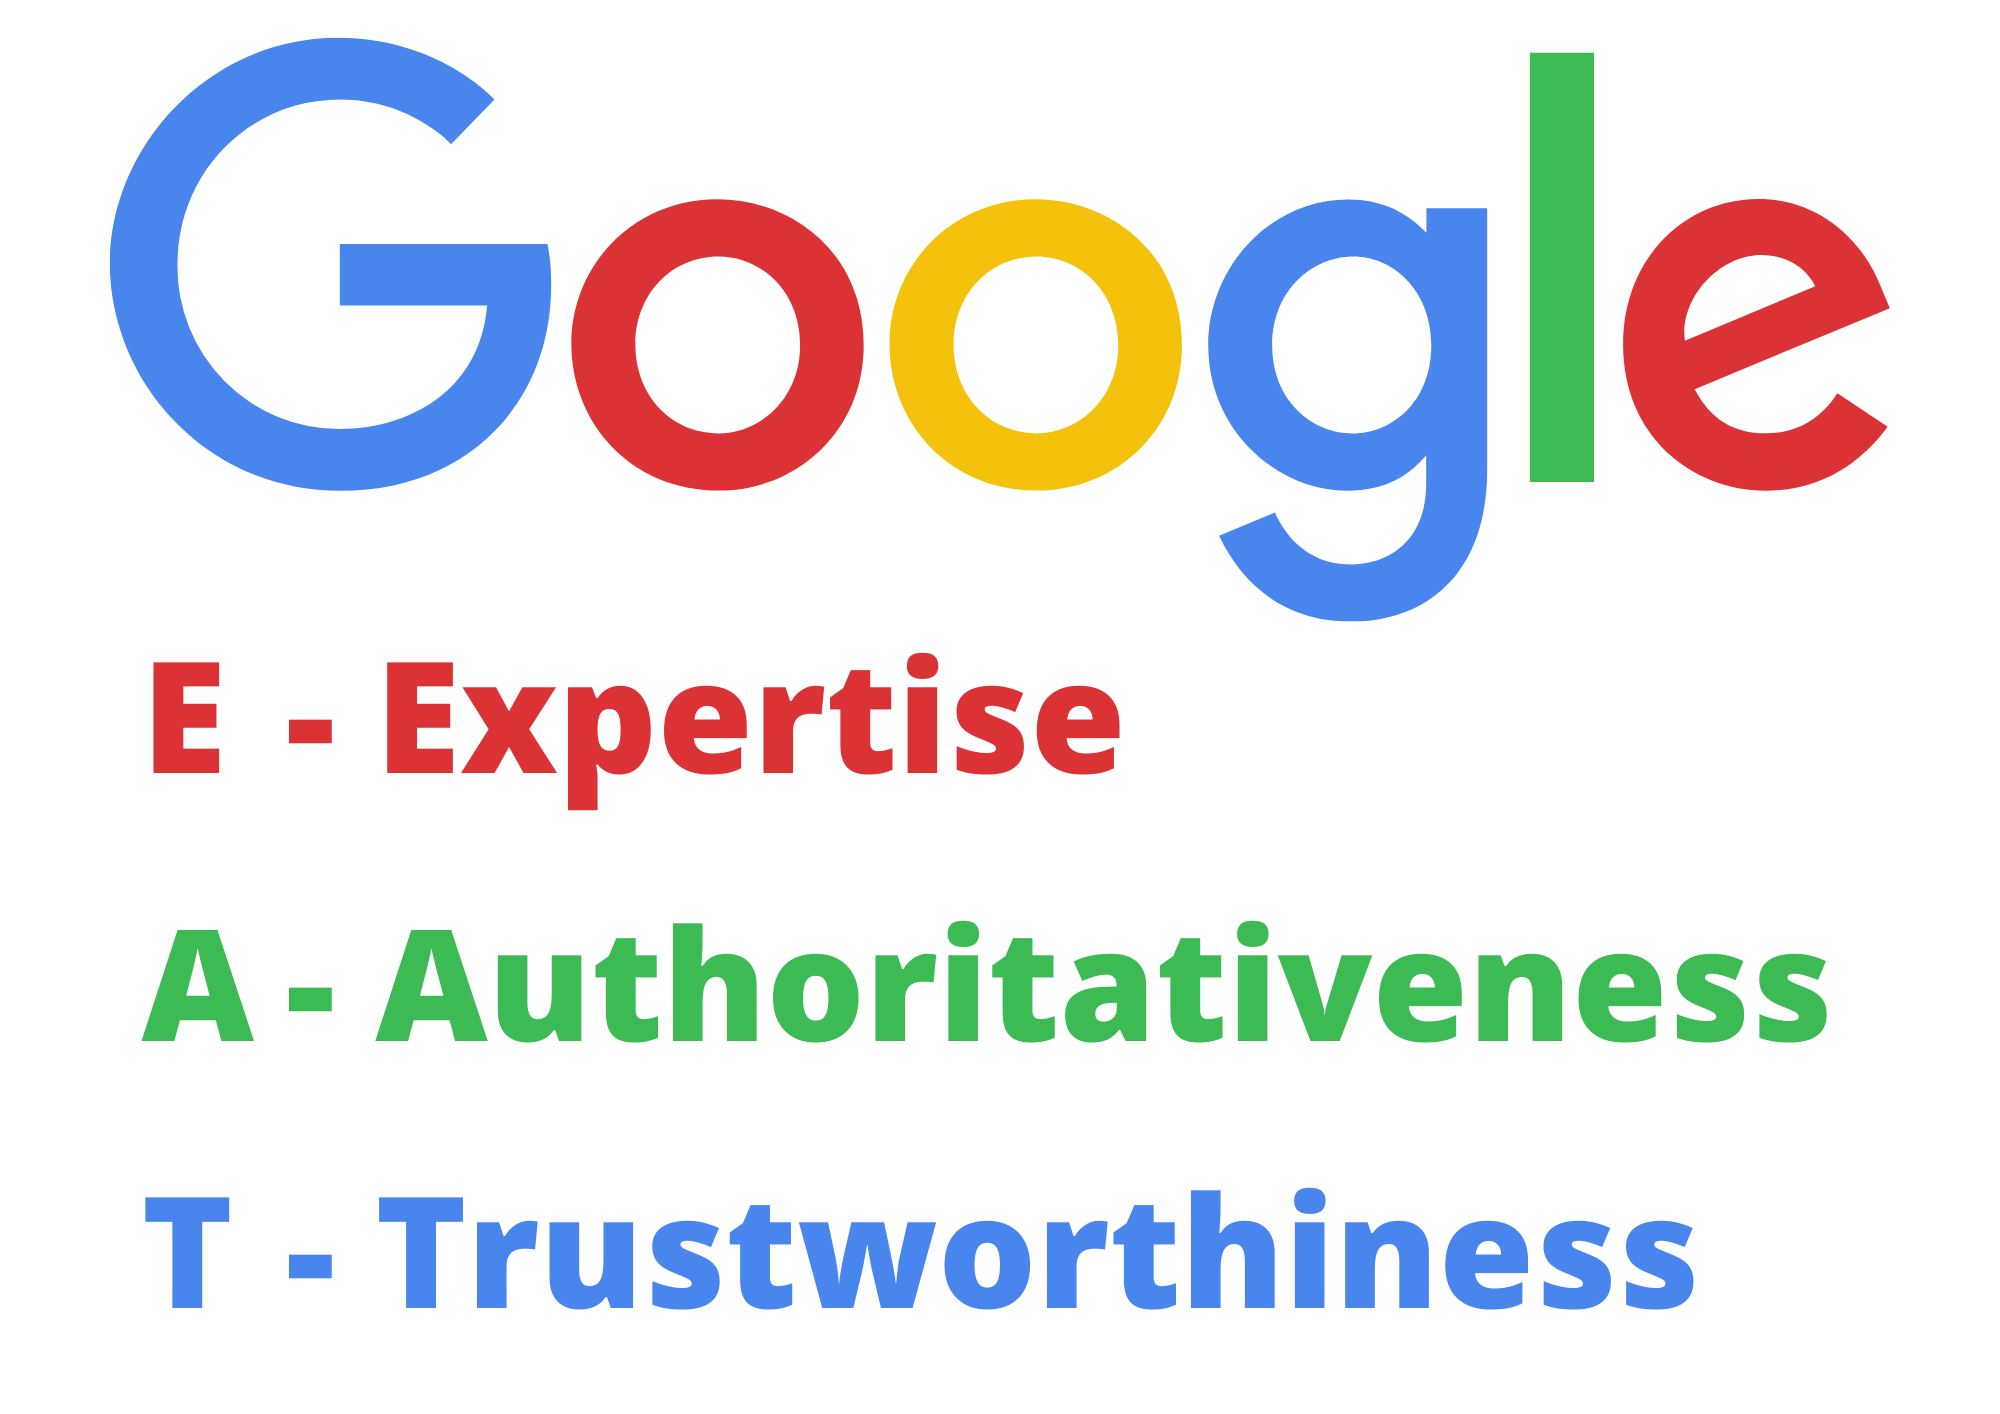 Graphic image showing Google's EAT Principle - Expertise, Authoritativeness, Trustworthiness